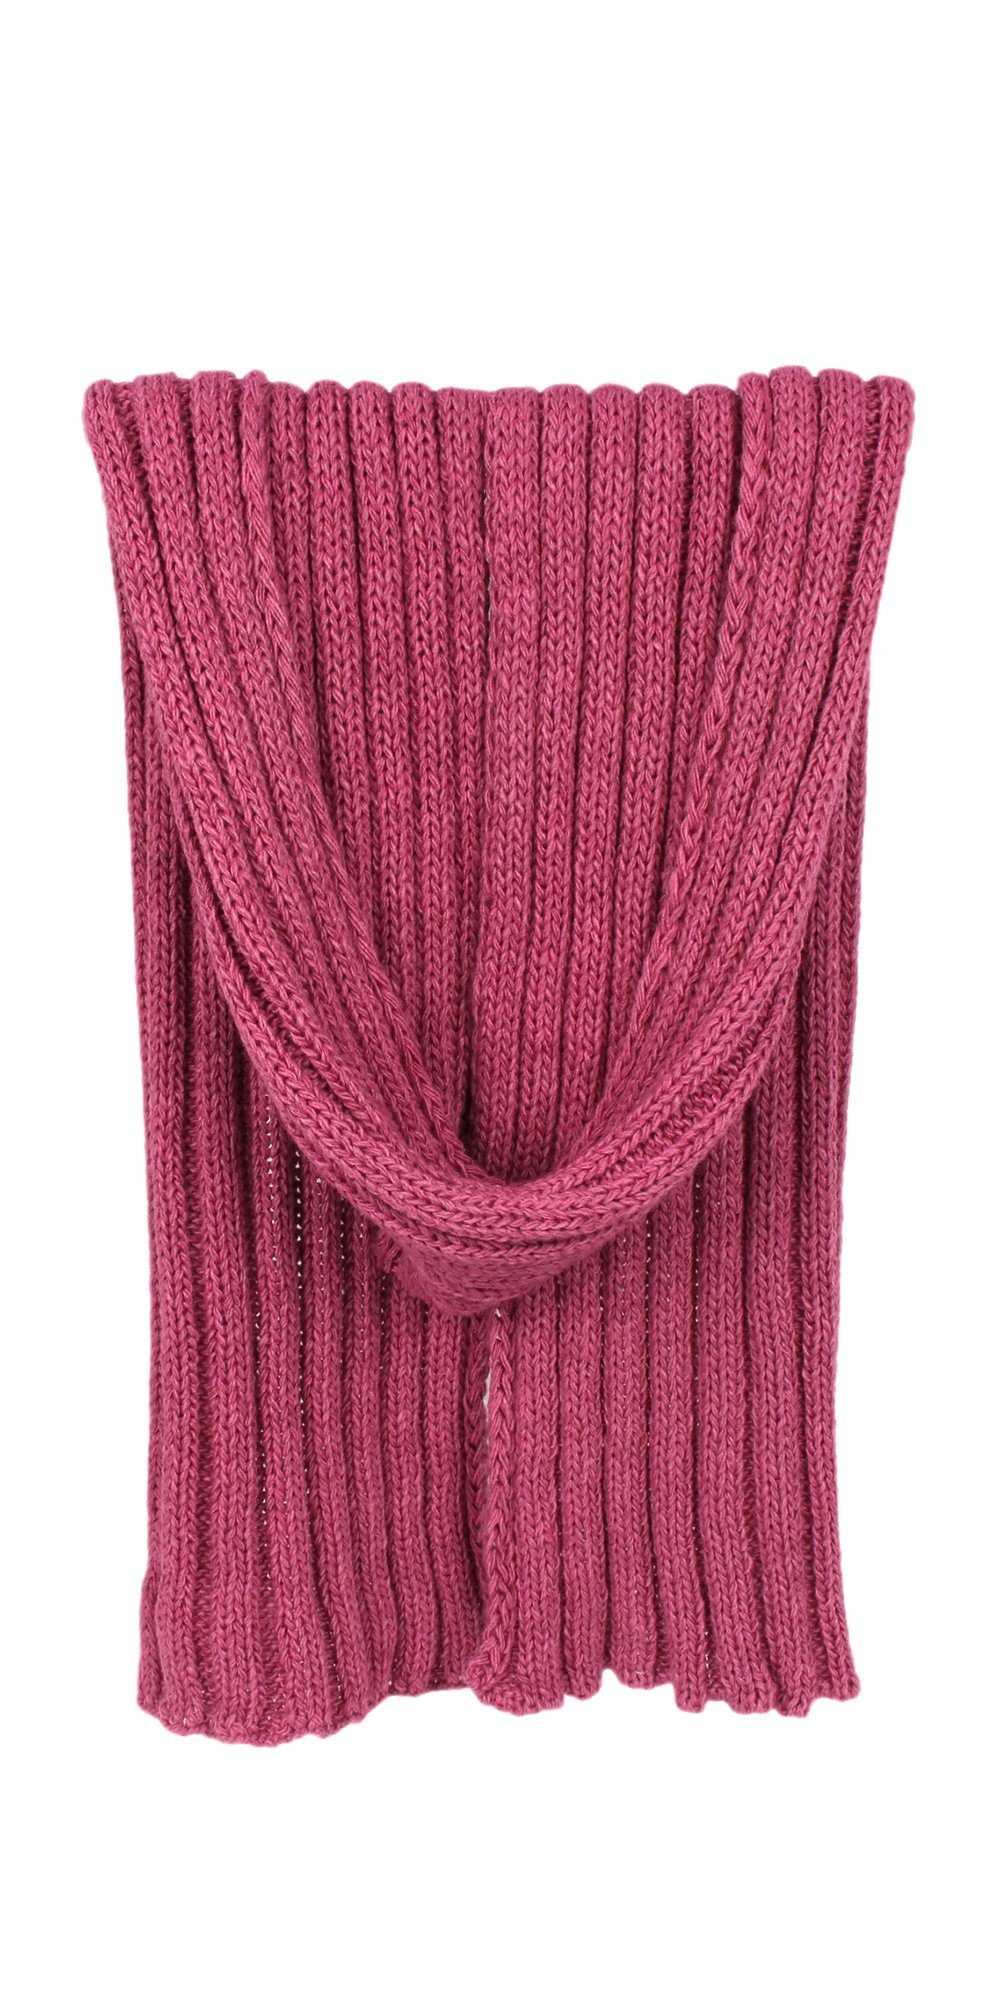 ZEBRO Strickschal Basic-Ripp 3/3, mit hohem Wollanteil pink